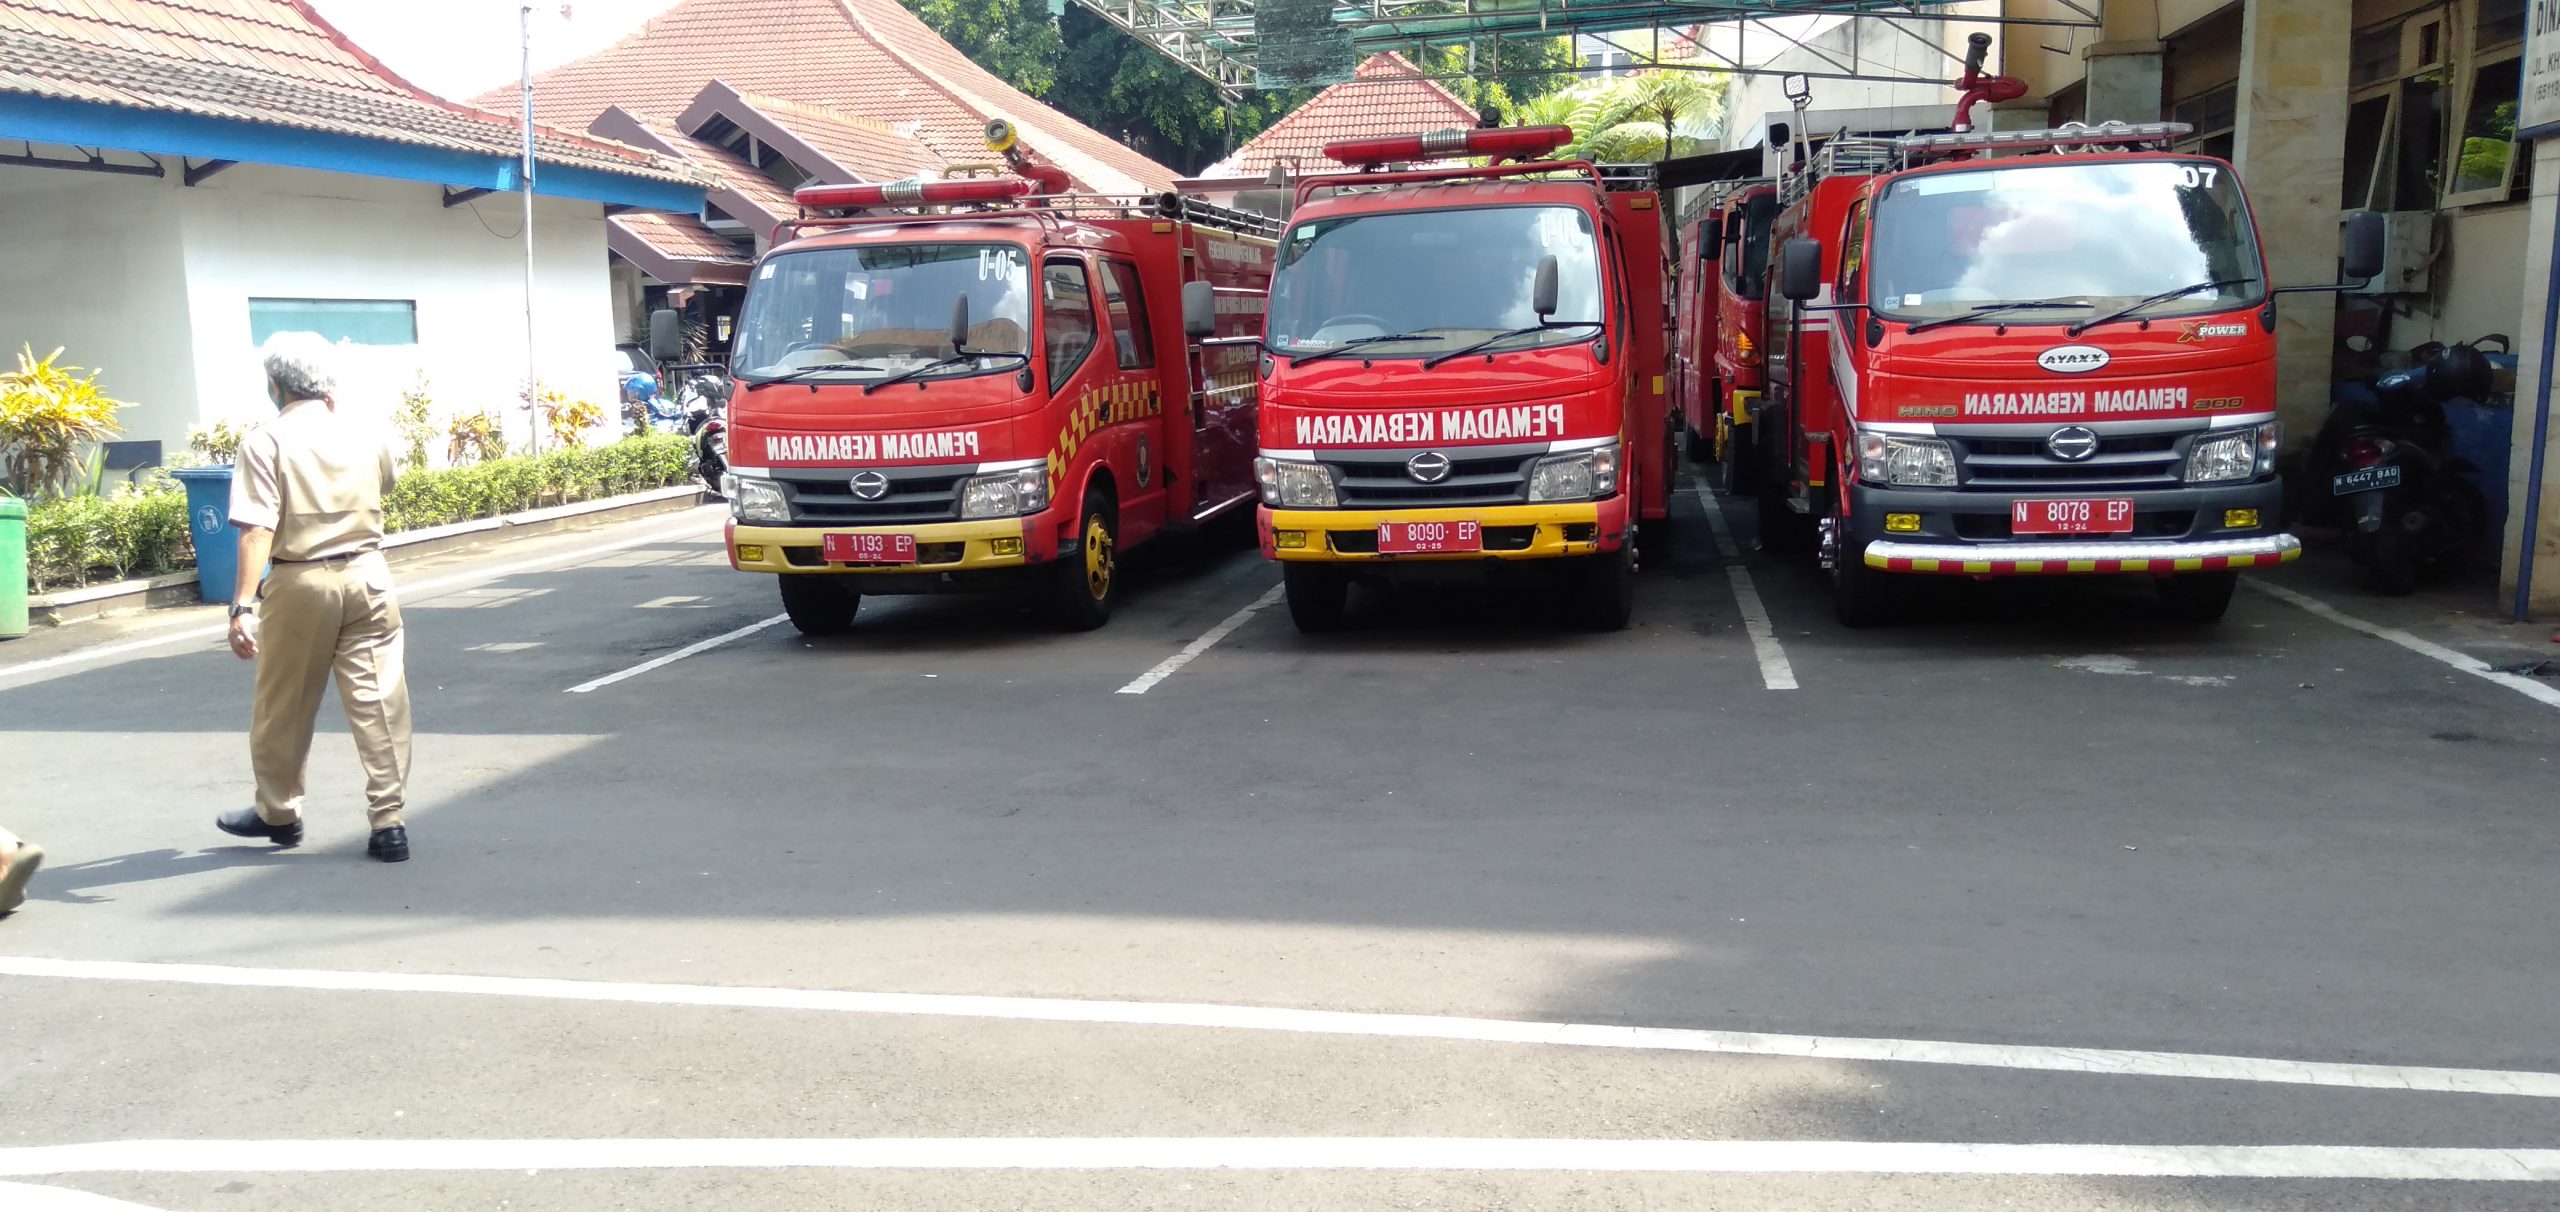 Hadapi Musim Kemarau, PPK Kabupaten Malang Siagakan 7 Armada Damkar